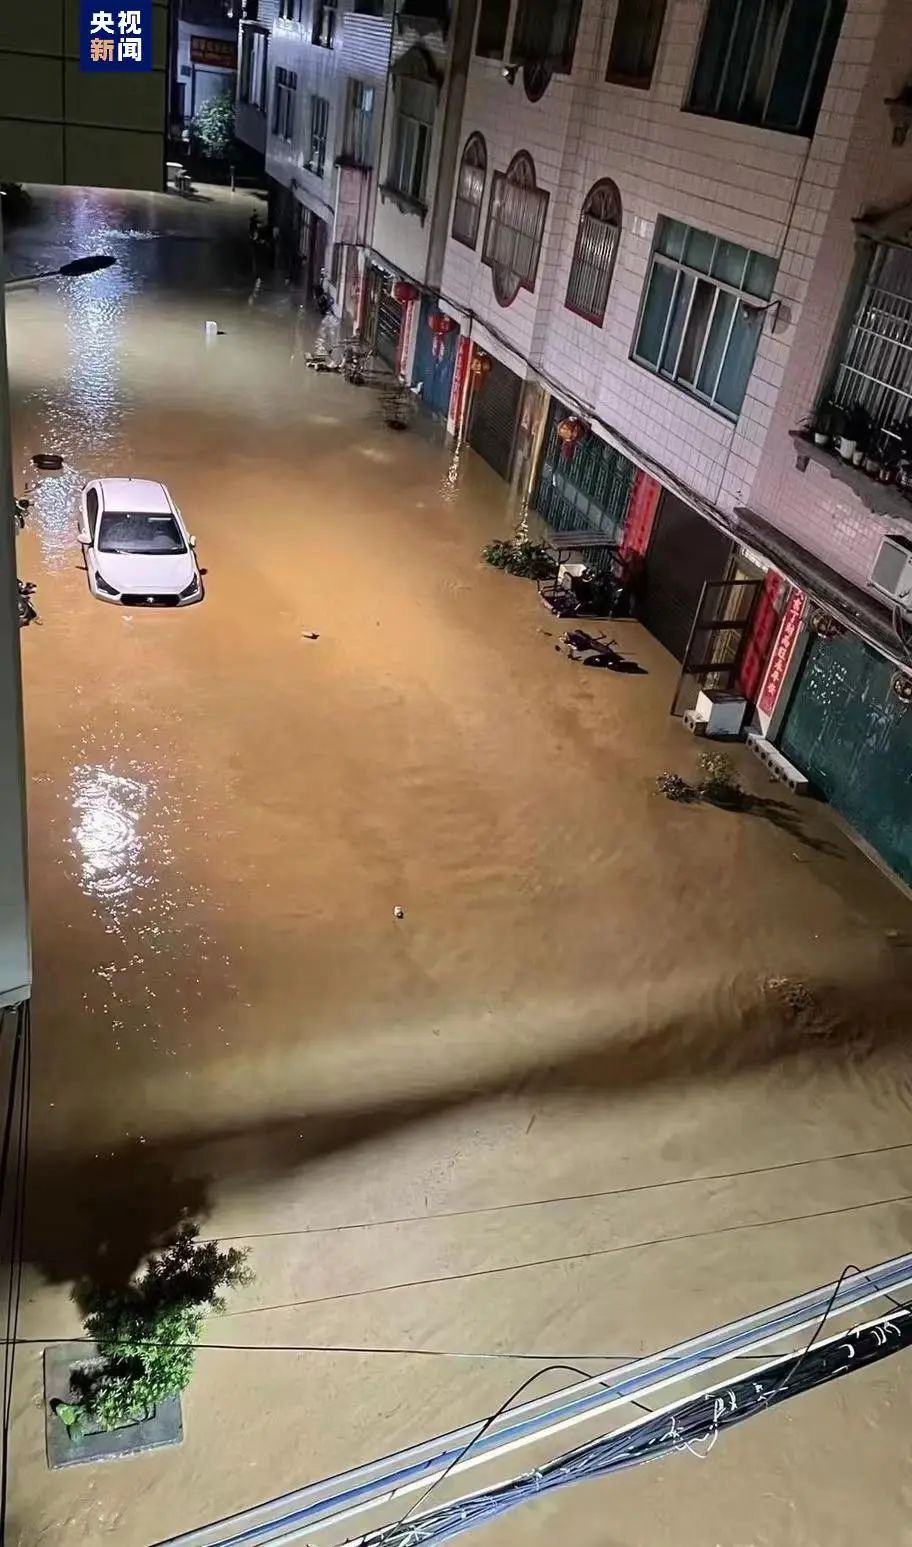 山洪灾害!超警洪水!广西多处被淹